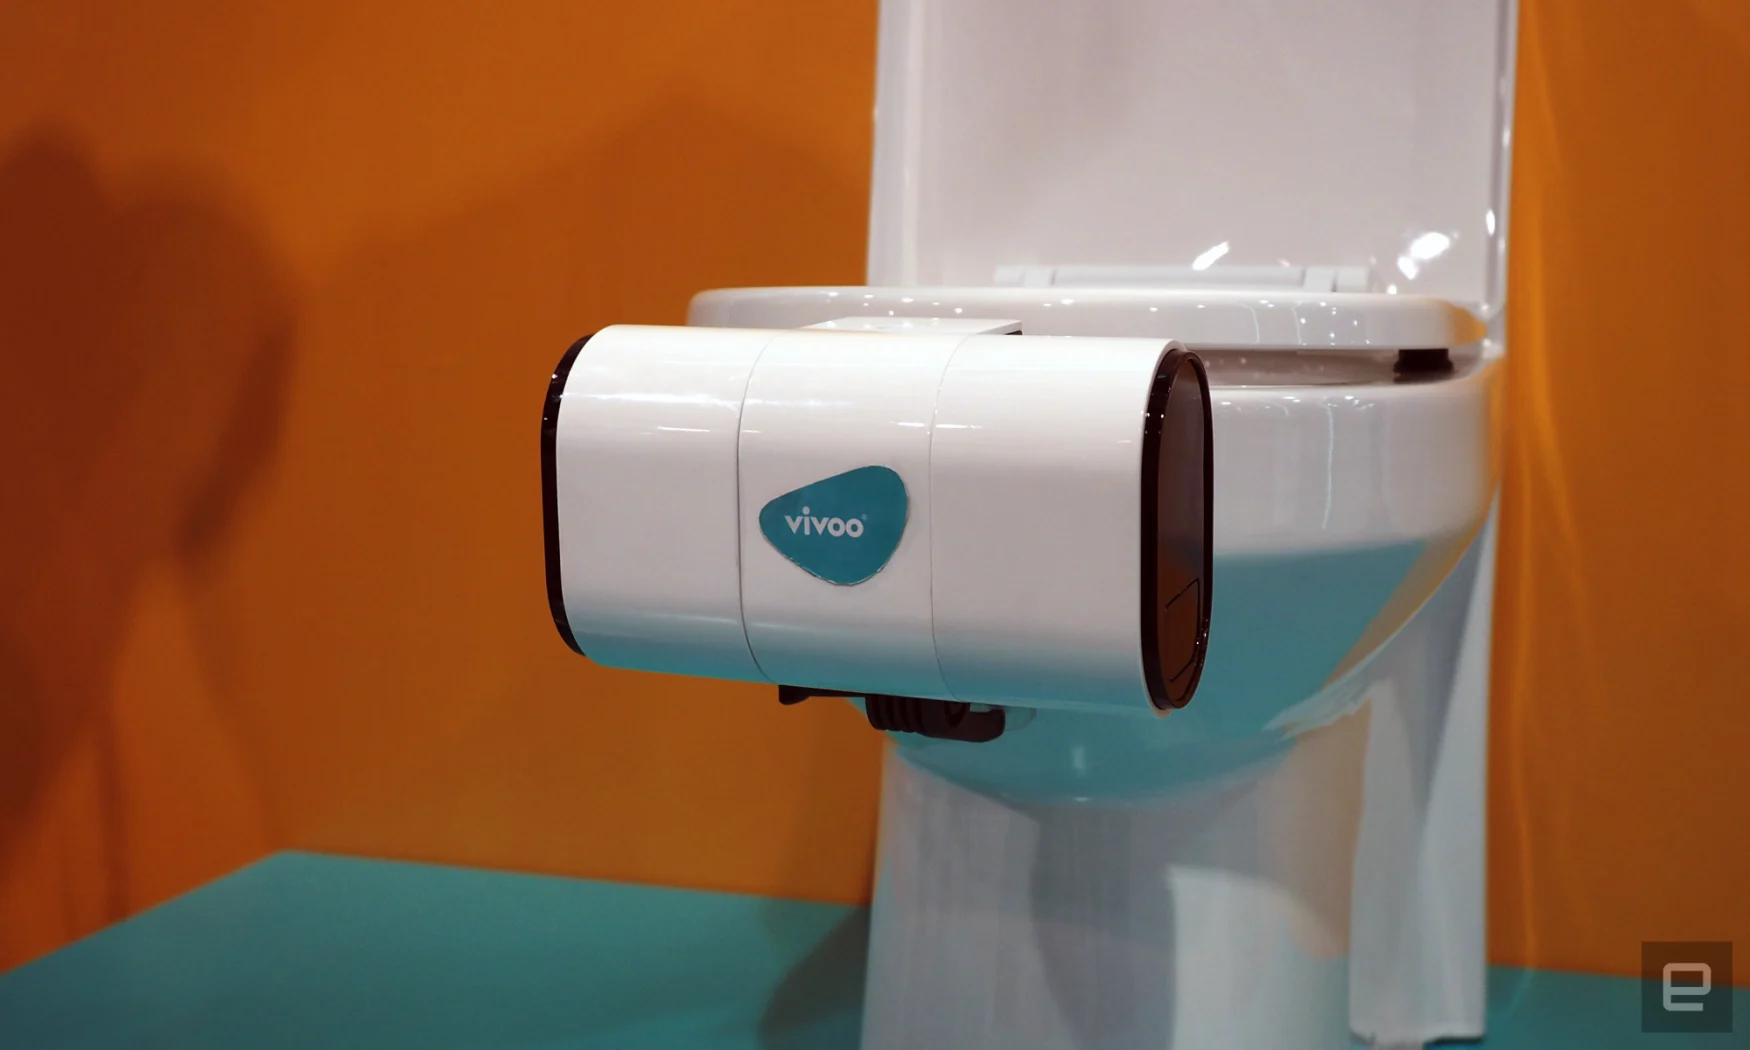 Image de l'appareil d'analyse d'urine monté sur les toilettes de Vivoo.